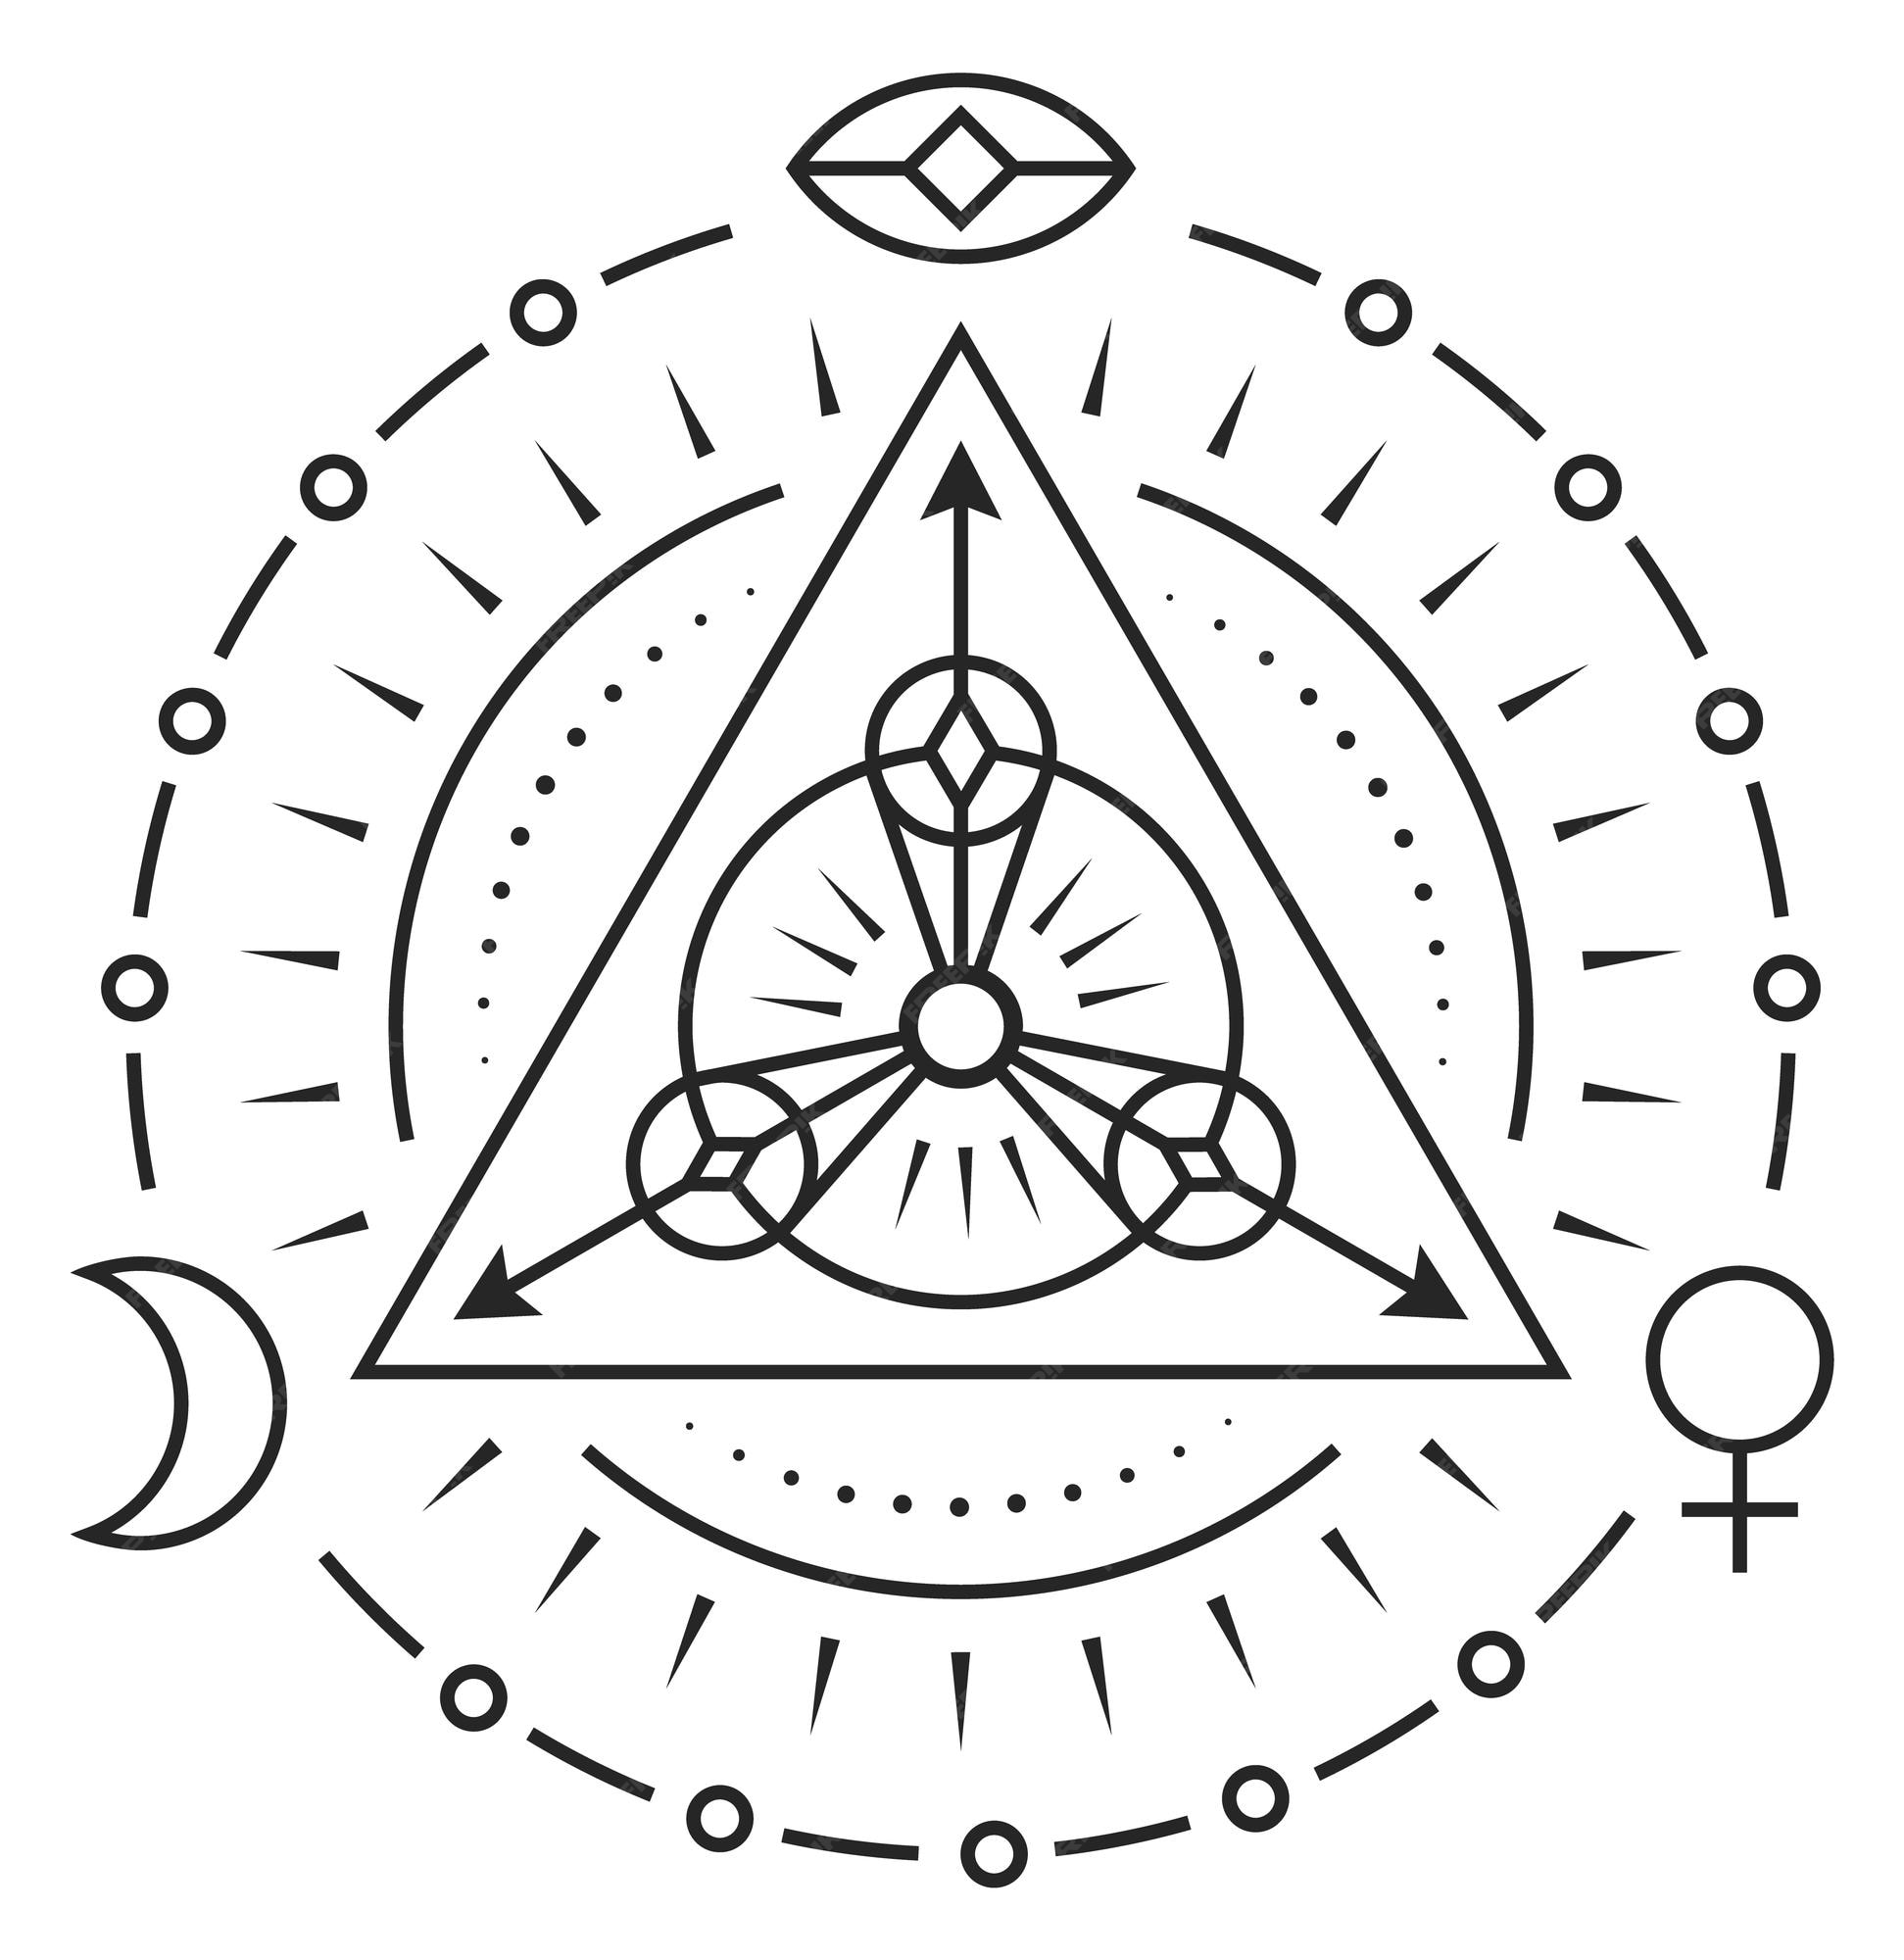 blik barbering mave Premium Vector | Sacred geometry symbol dark magic ritual element